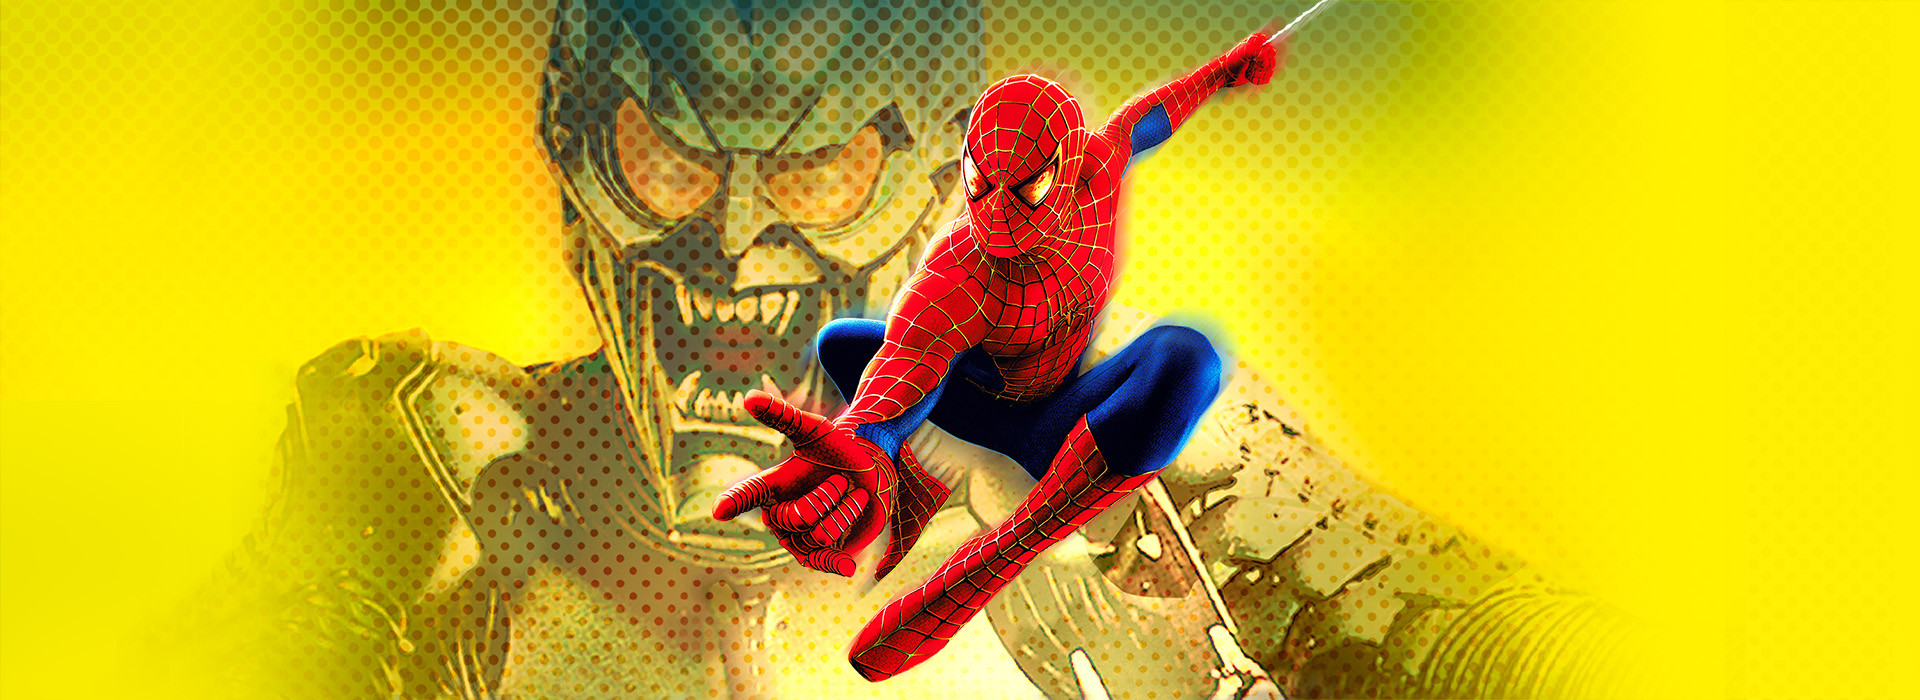 Movie poster Spider-Man